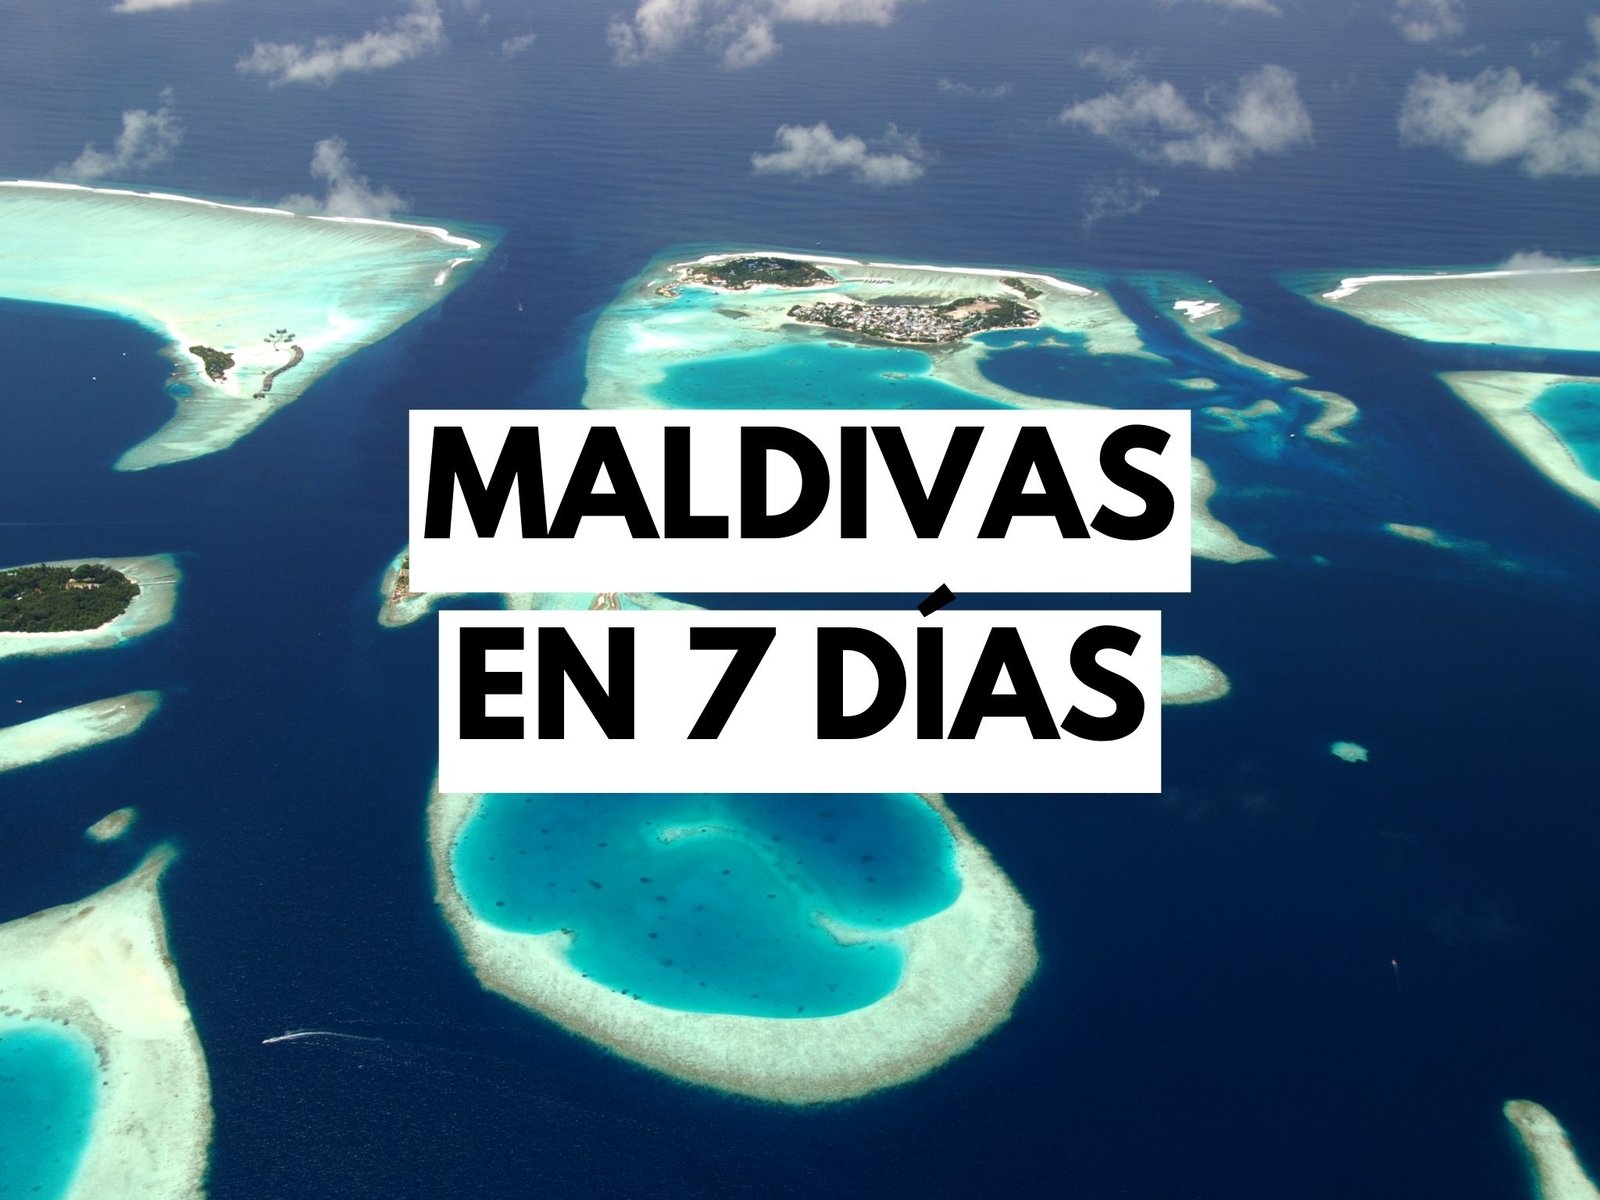 itinerario-maldivas-7dias